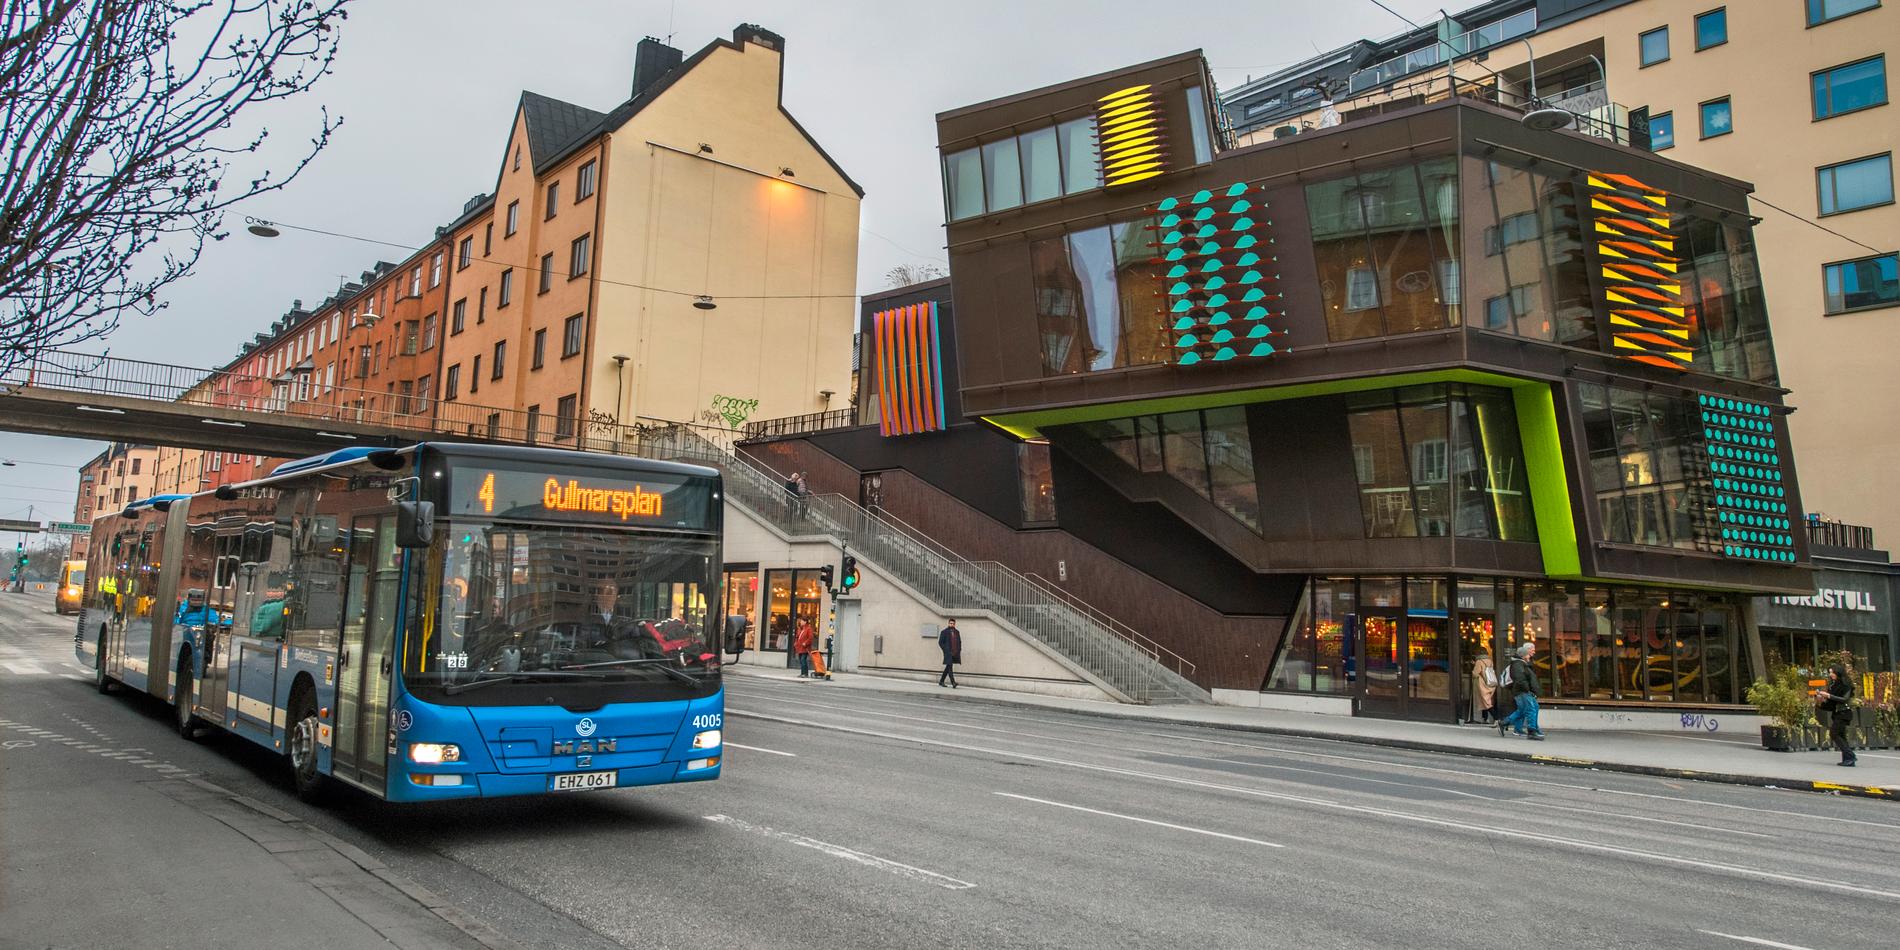 Enligt Miljöpartiet är fyrans buss den mest trafikerade i hela Sverige och bör göras om till spårväg.